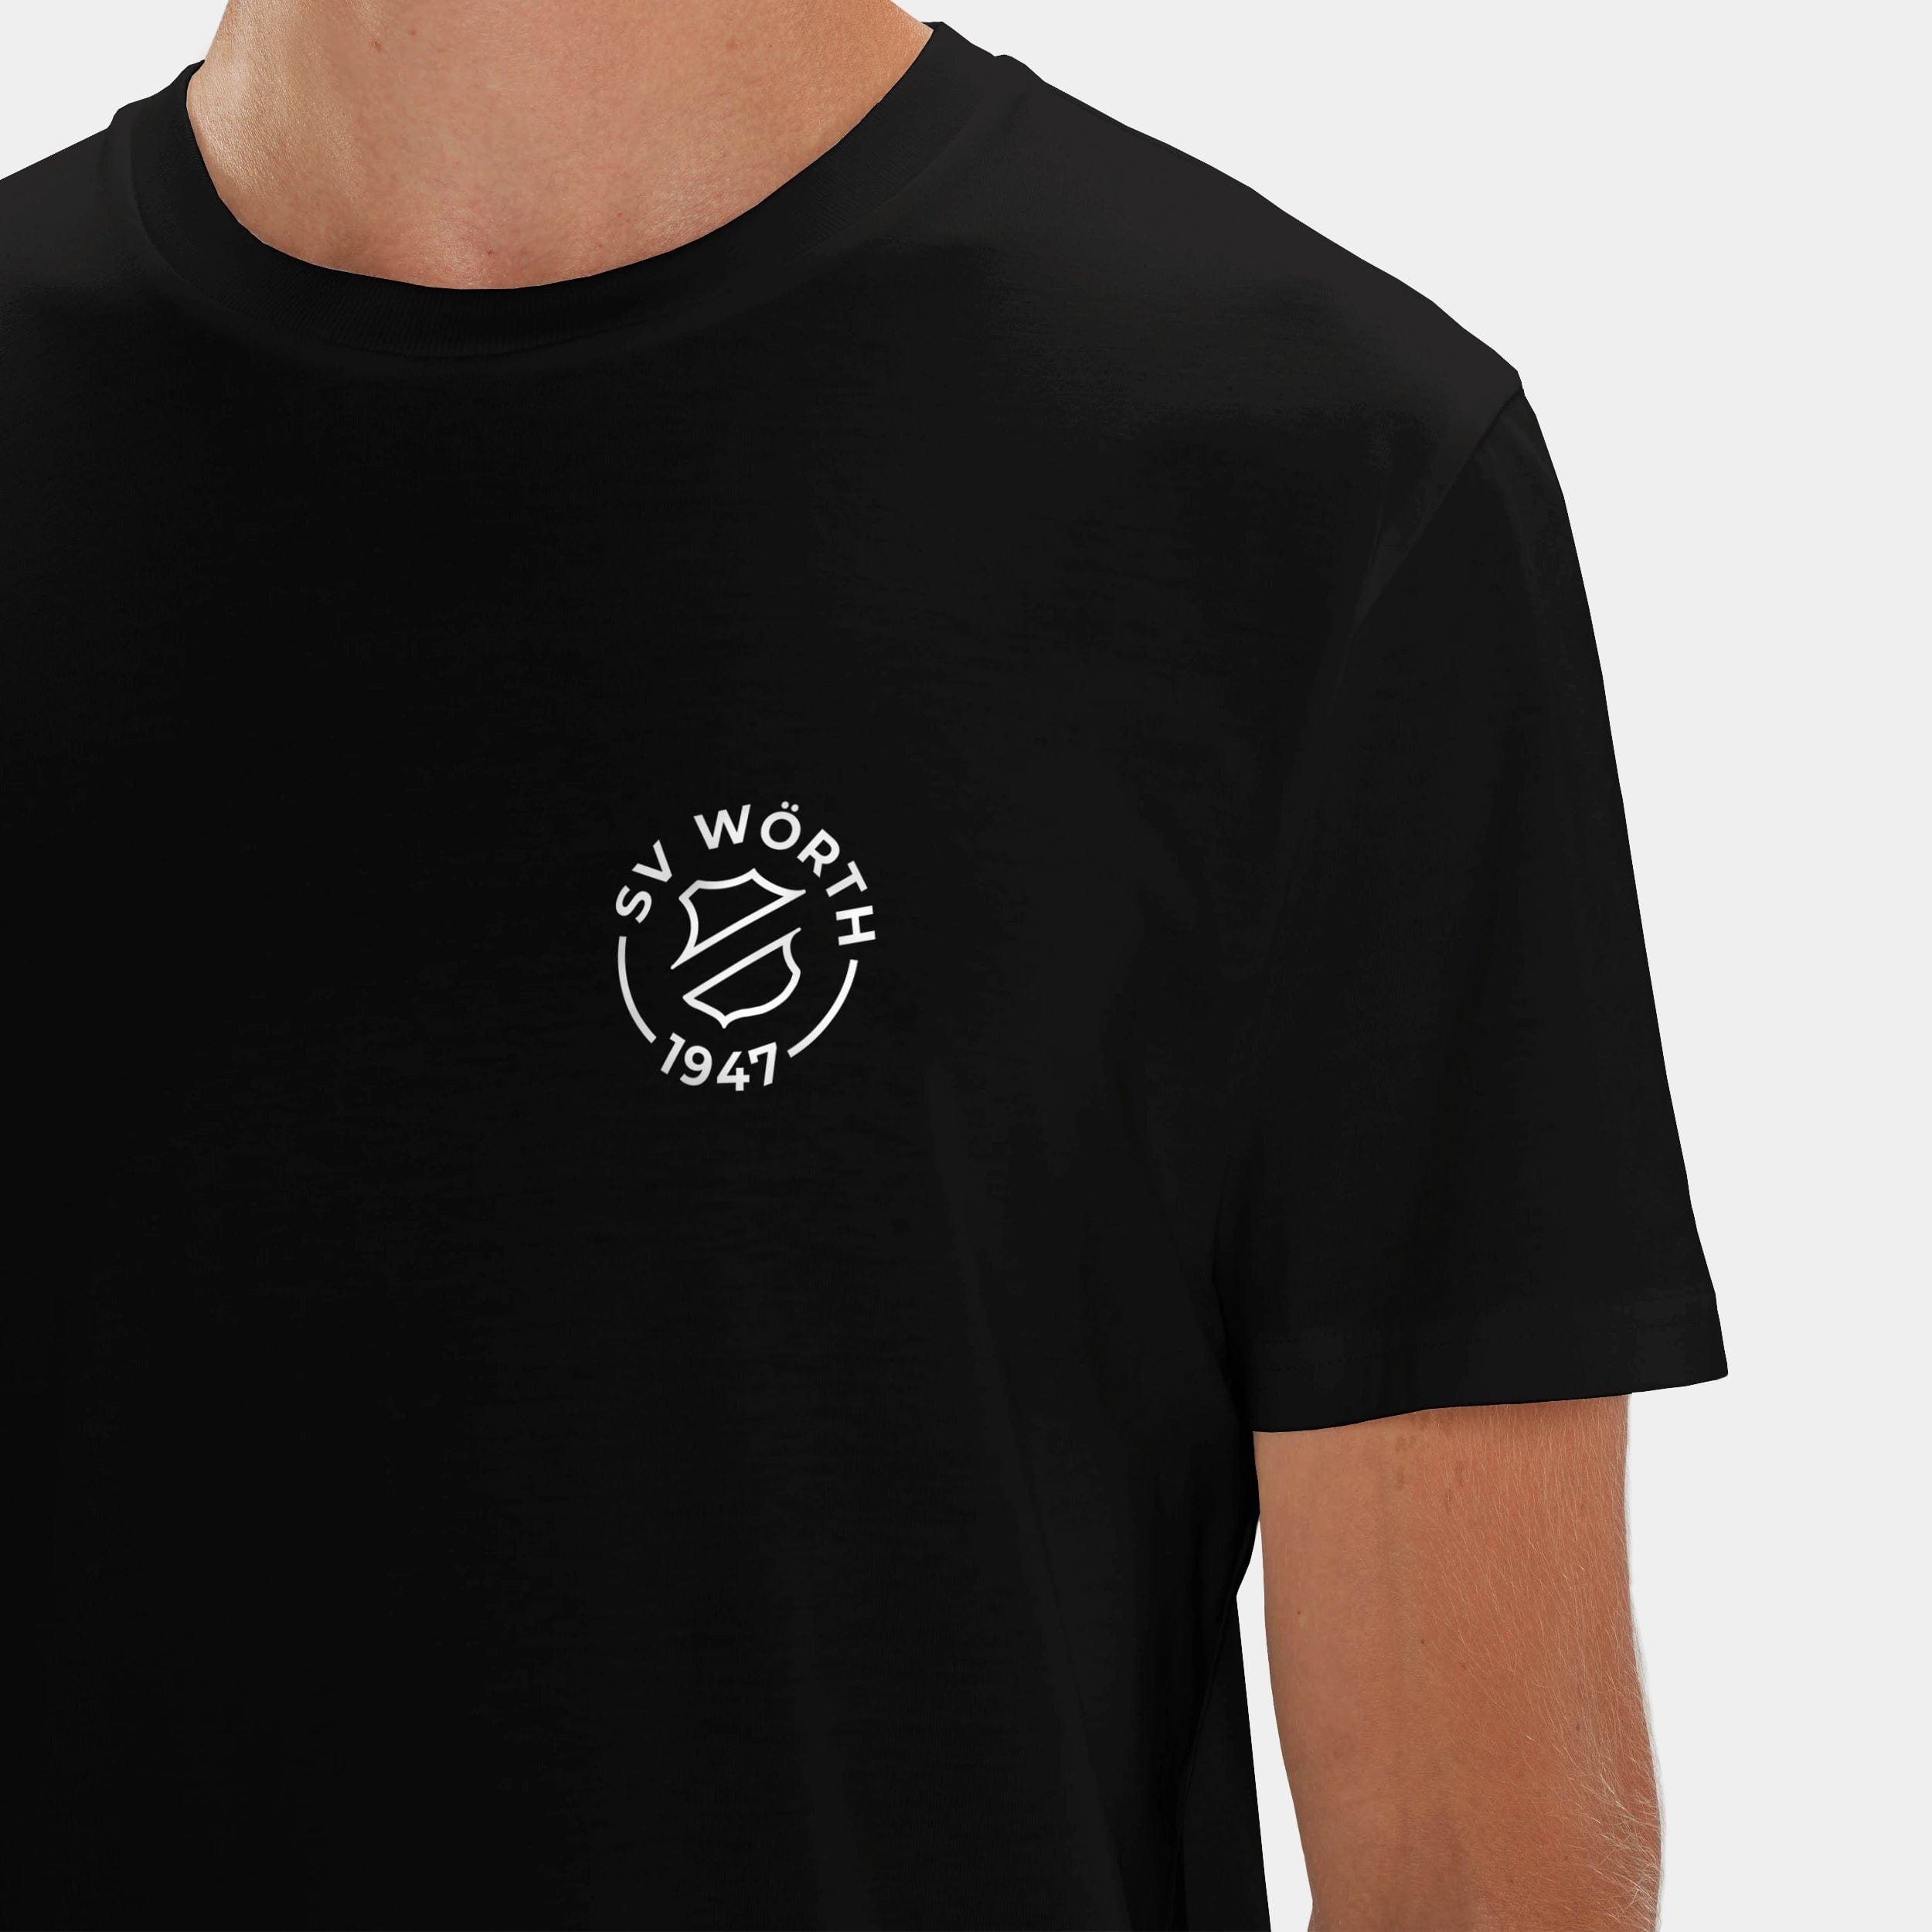 HEITER & LÄSSIG T-Shirt "SV Wörth" XXS / schwarz - aus nachhaltiger und fairer Produktion